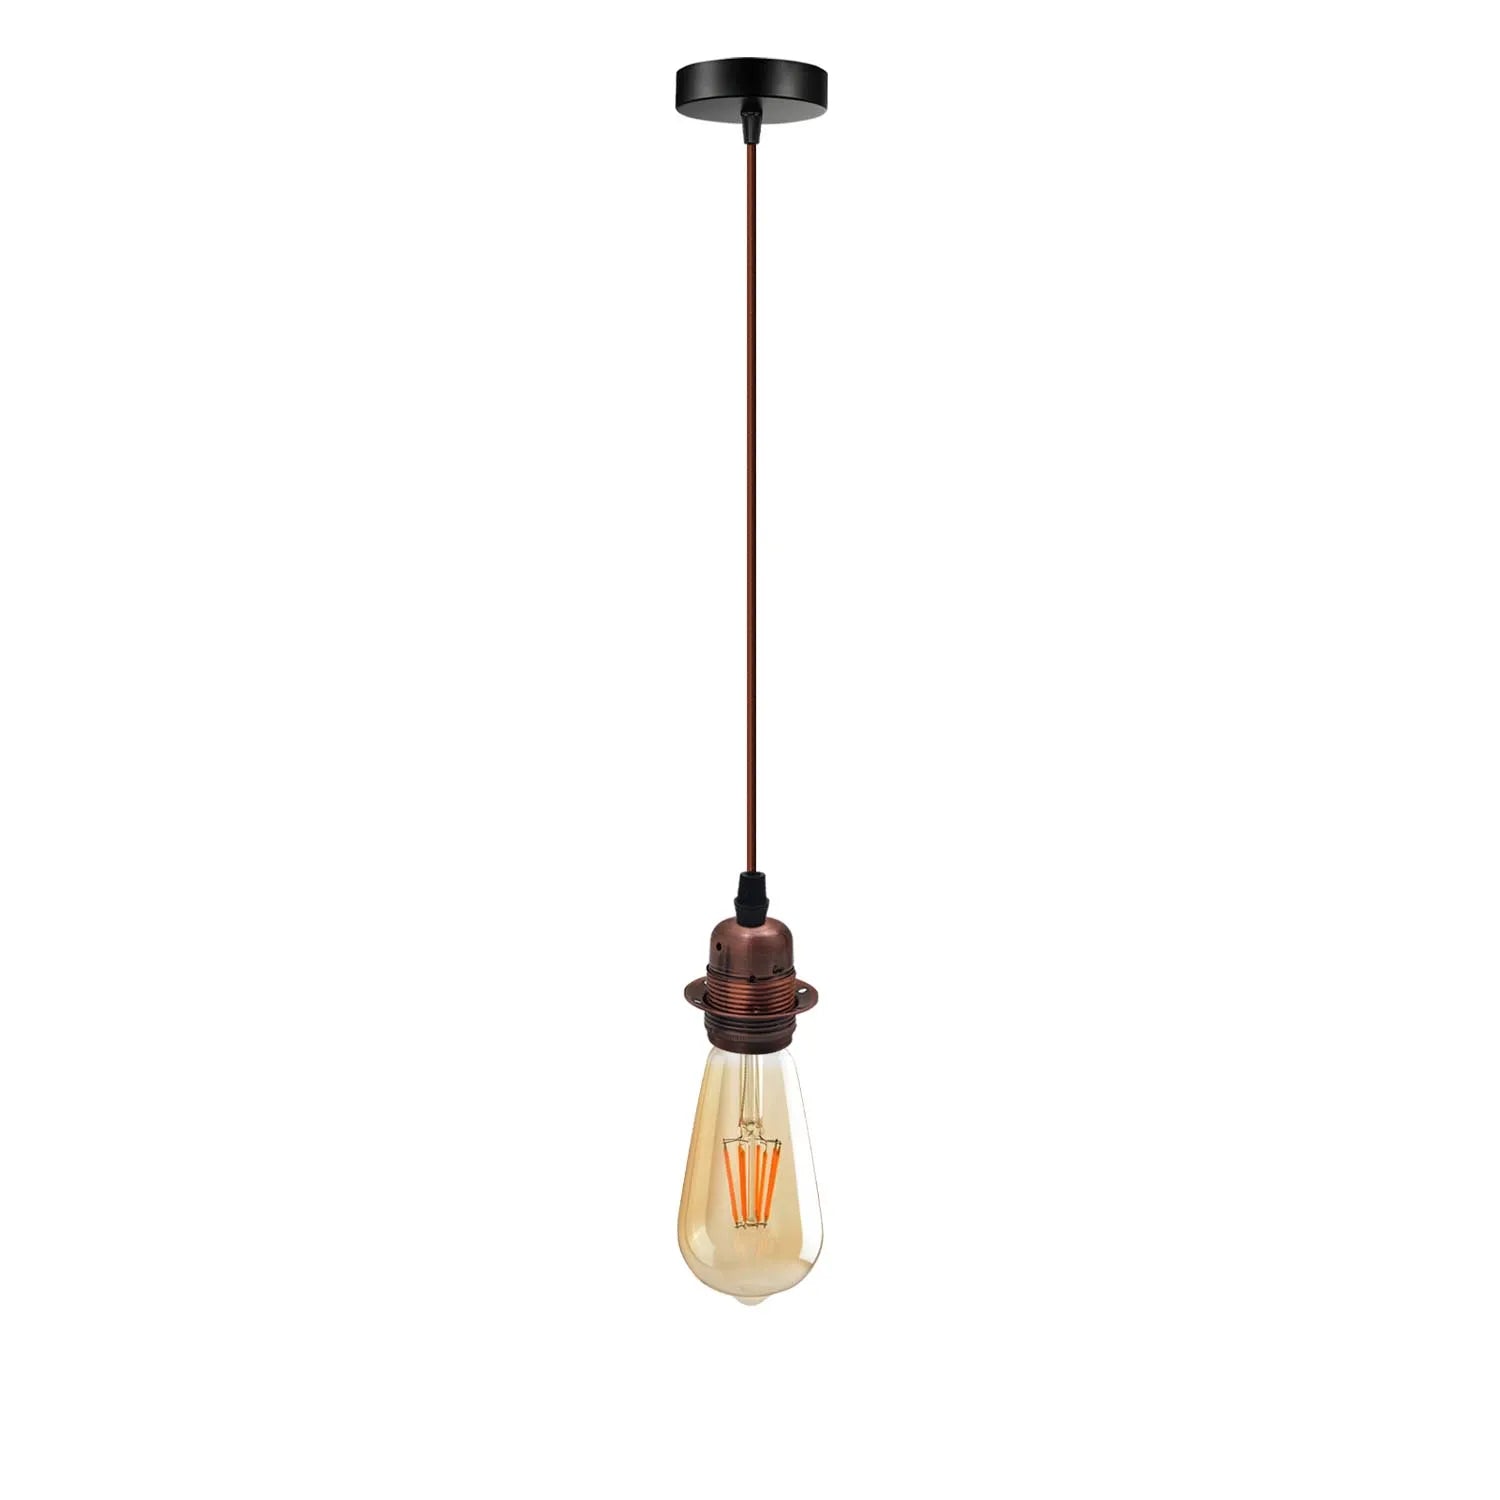 Vintage Industrial Copper Pendant Light,Lamp Holder Ceiling Hanging Light~4261